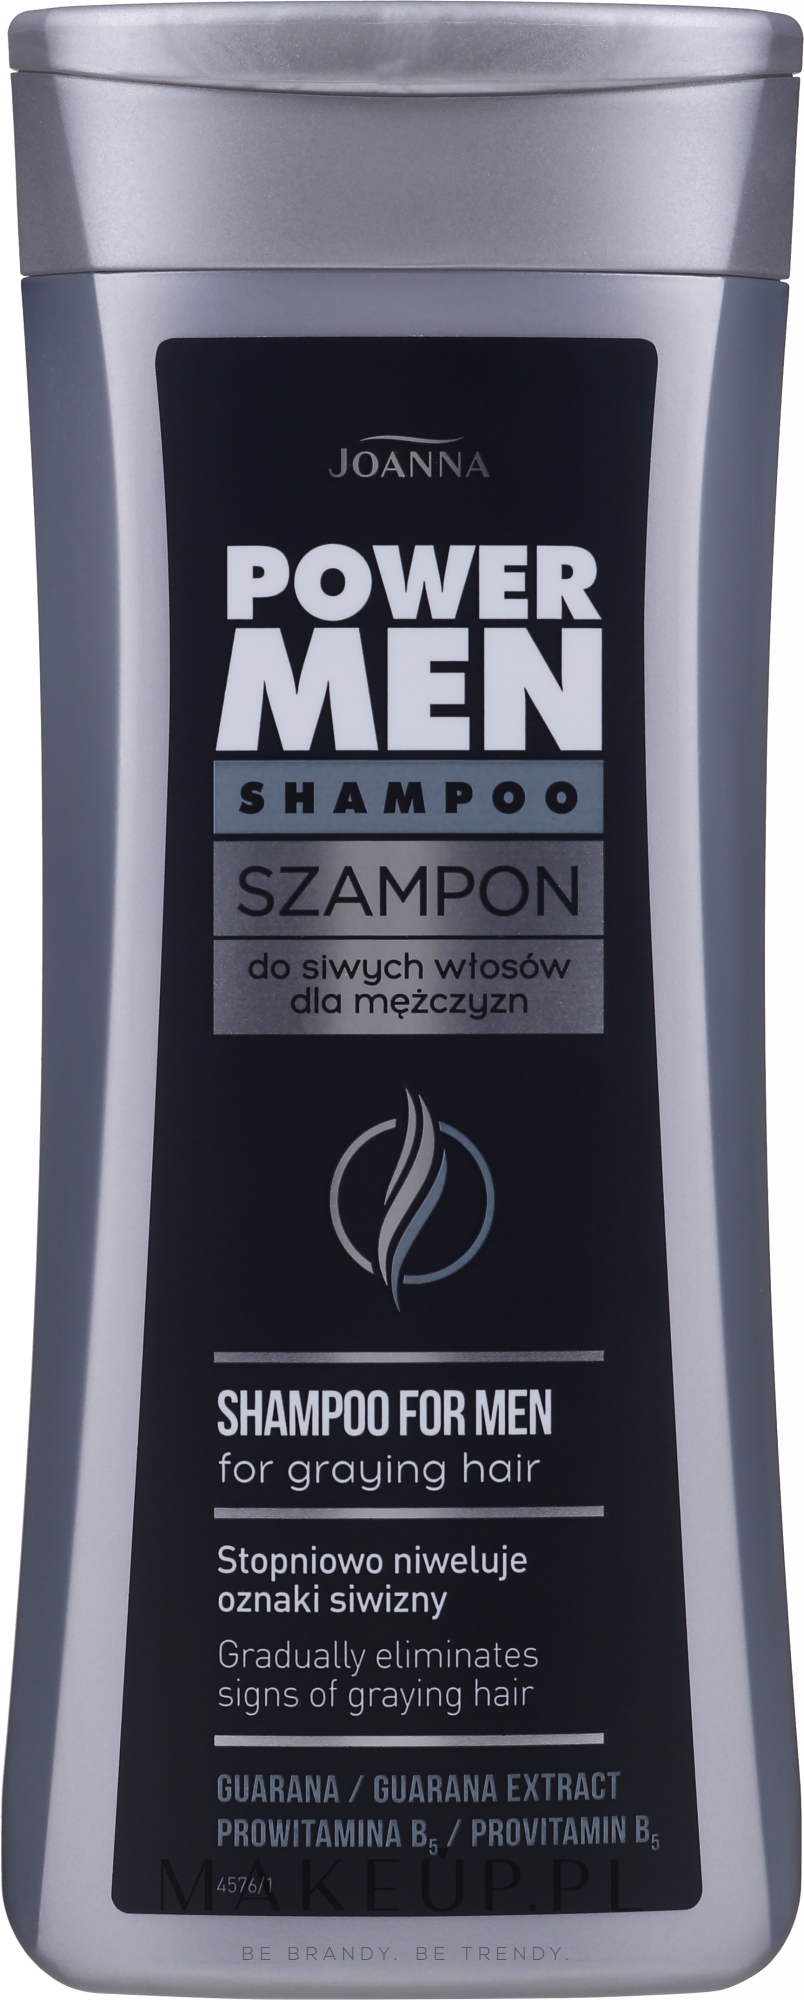 szampon na siwienie men brązer